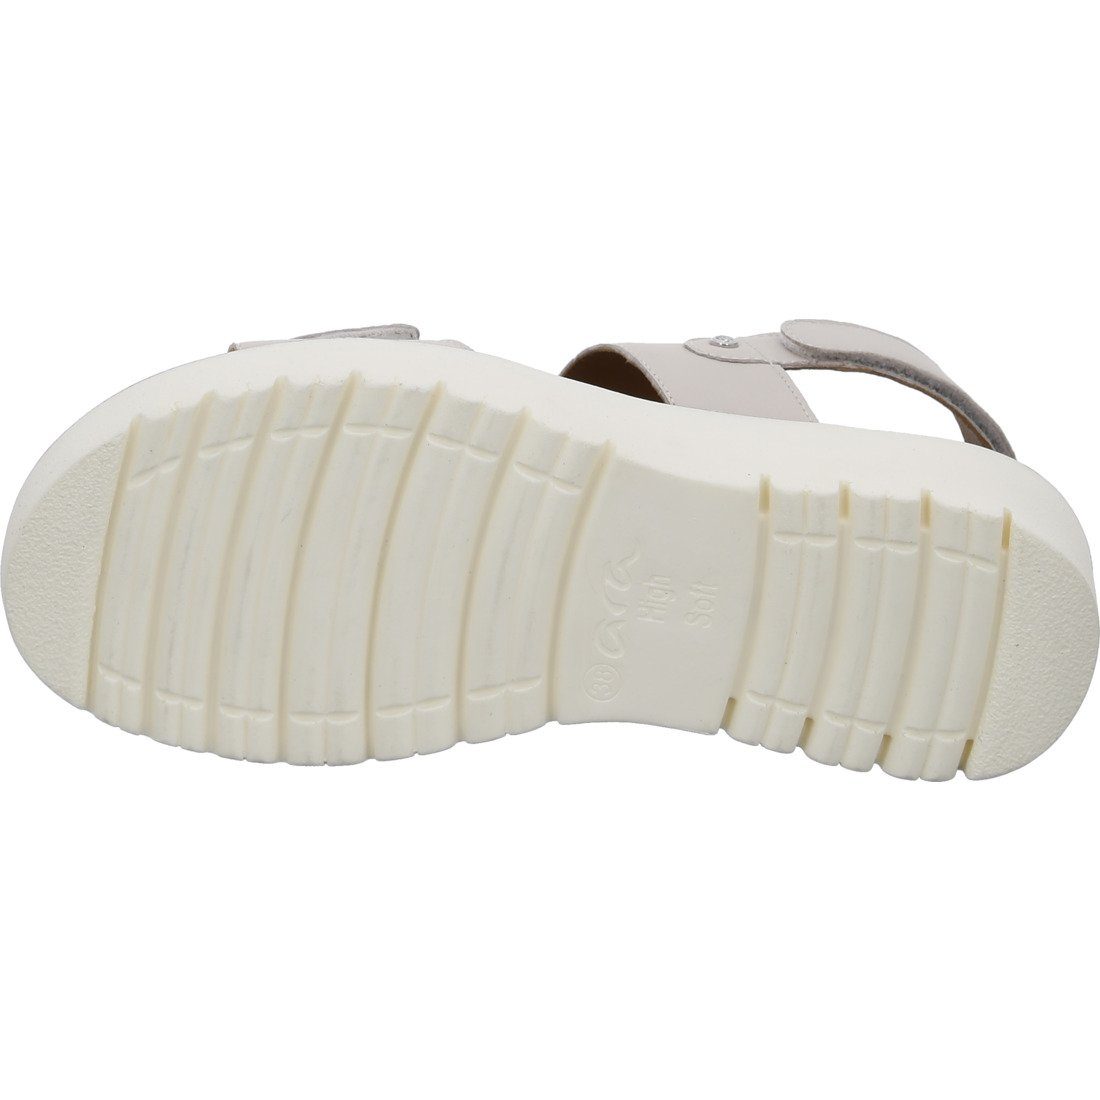 Schuhe, Ara Bilbao Ara 048122 - beige Sandalette Sandalette Glattleder